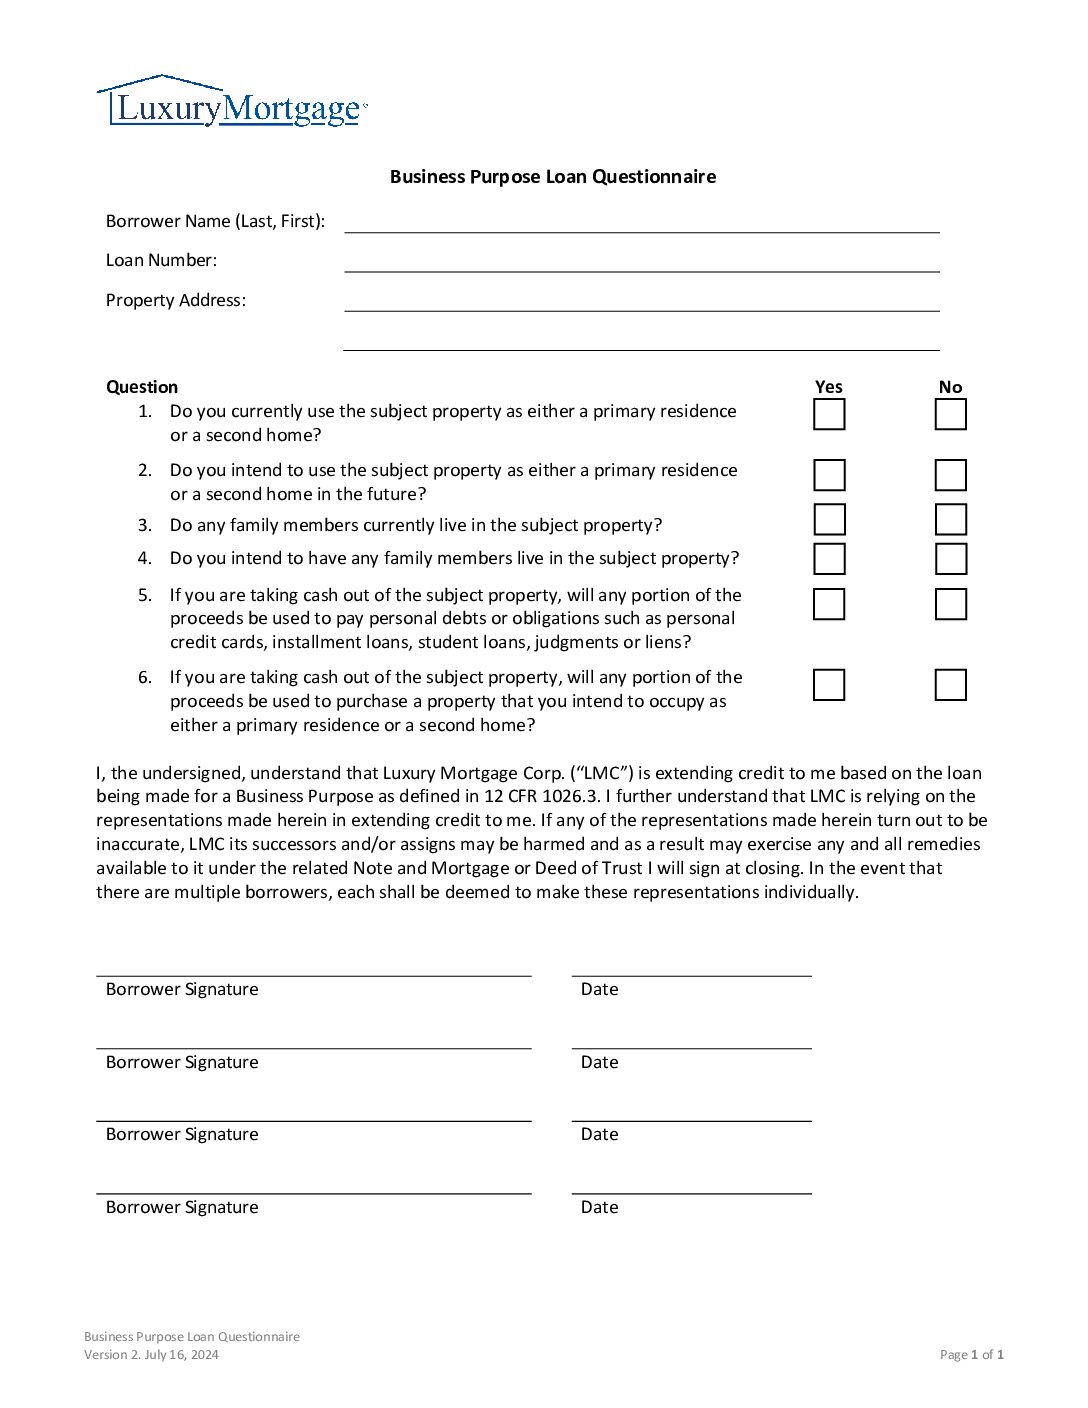 Business Purpose Loan Questionnaire Screenshot